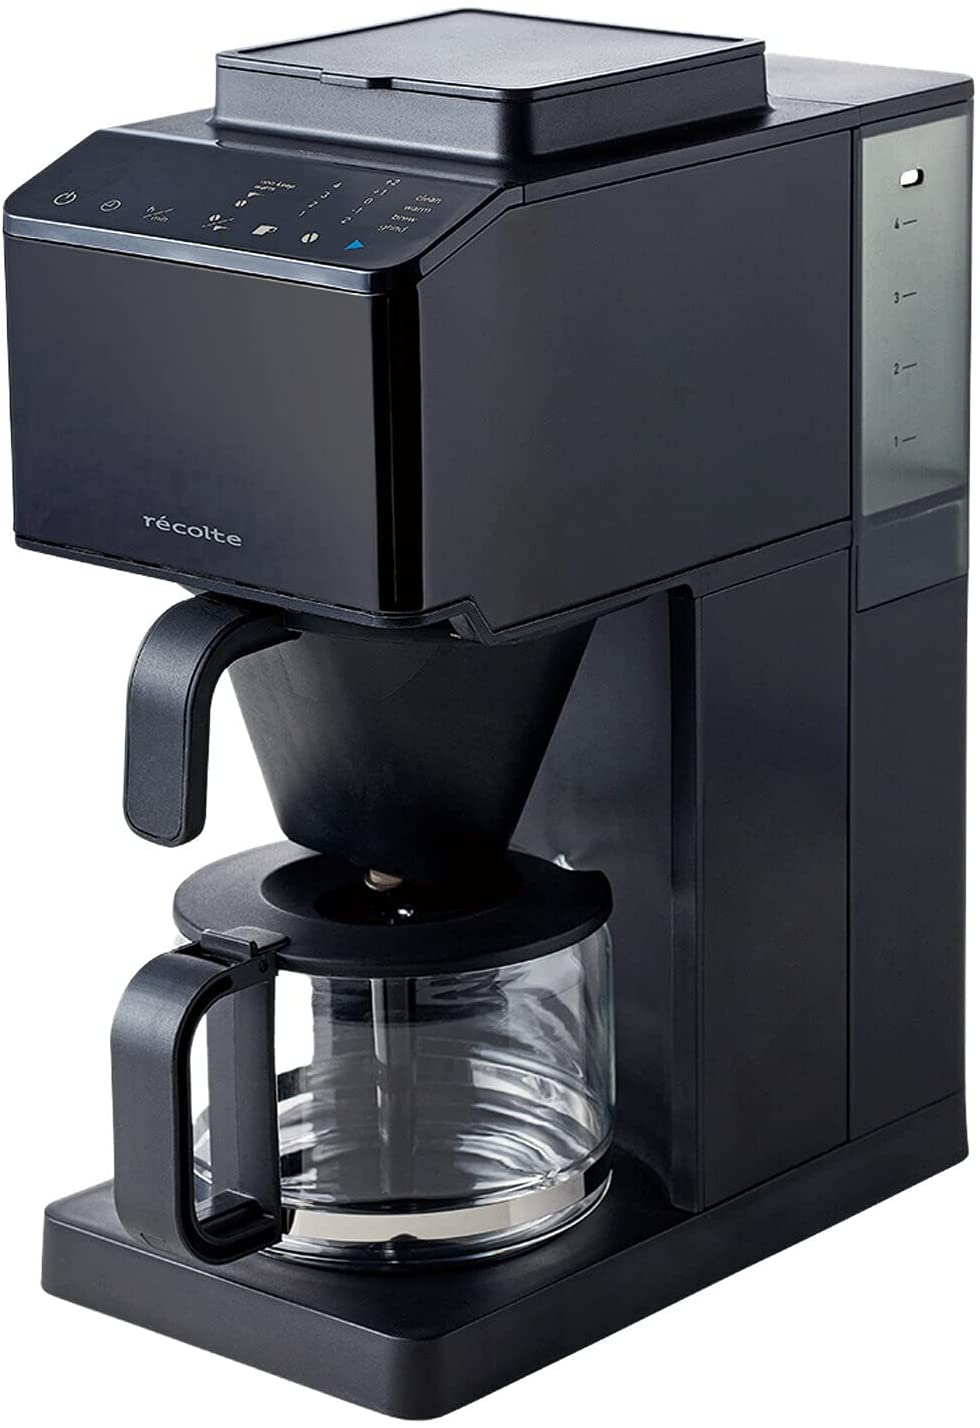 レコルト コーン式全自動コーヒーメーカー RCD-1